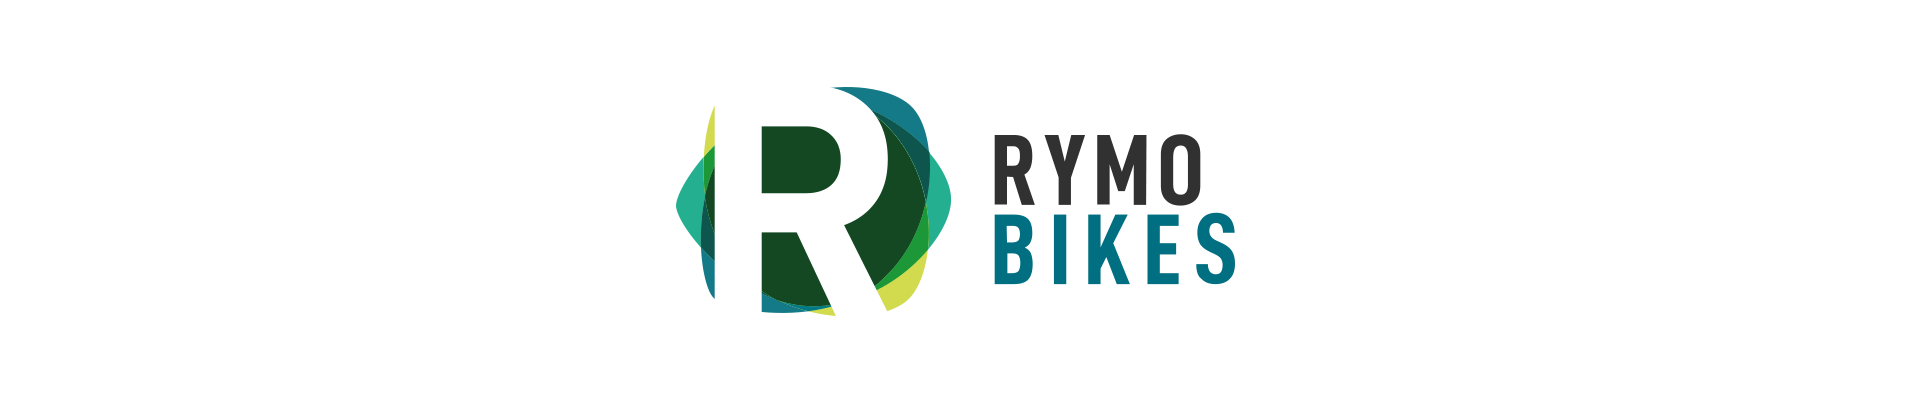 RYMO Bisikletleri